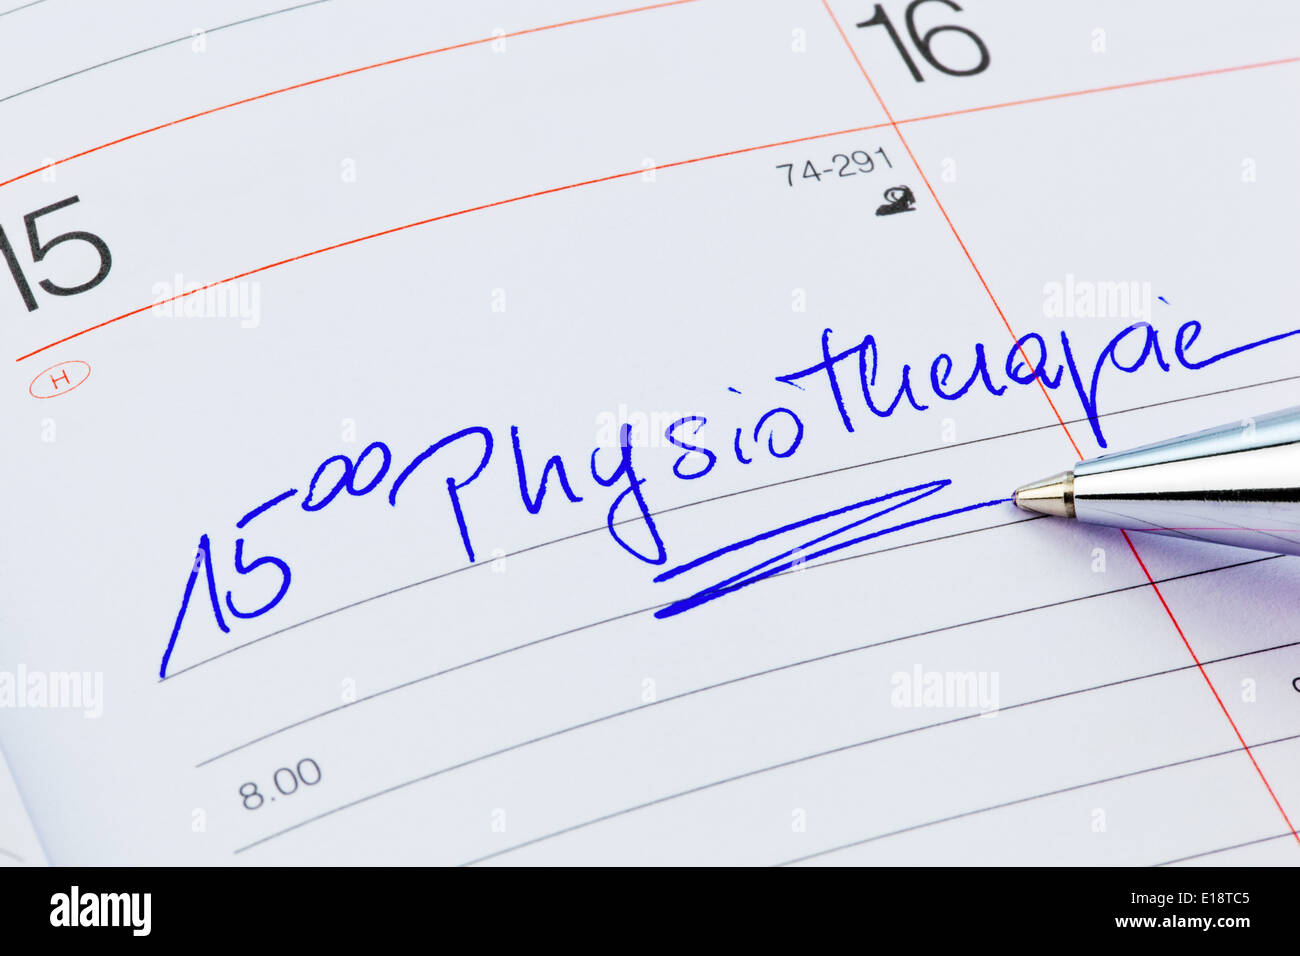 Ein Termin ist in einem Kalender eingetragen: Physiotherapie Foto Stock